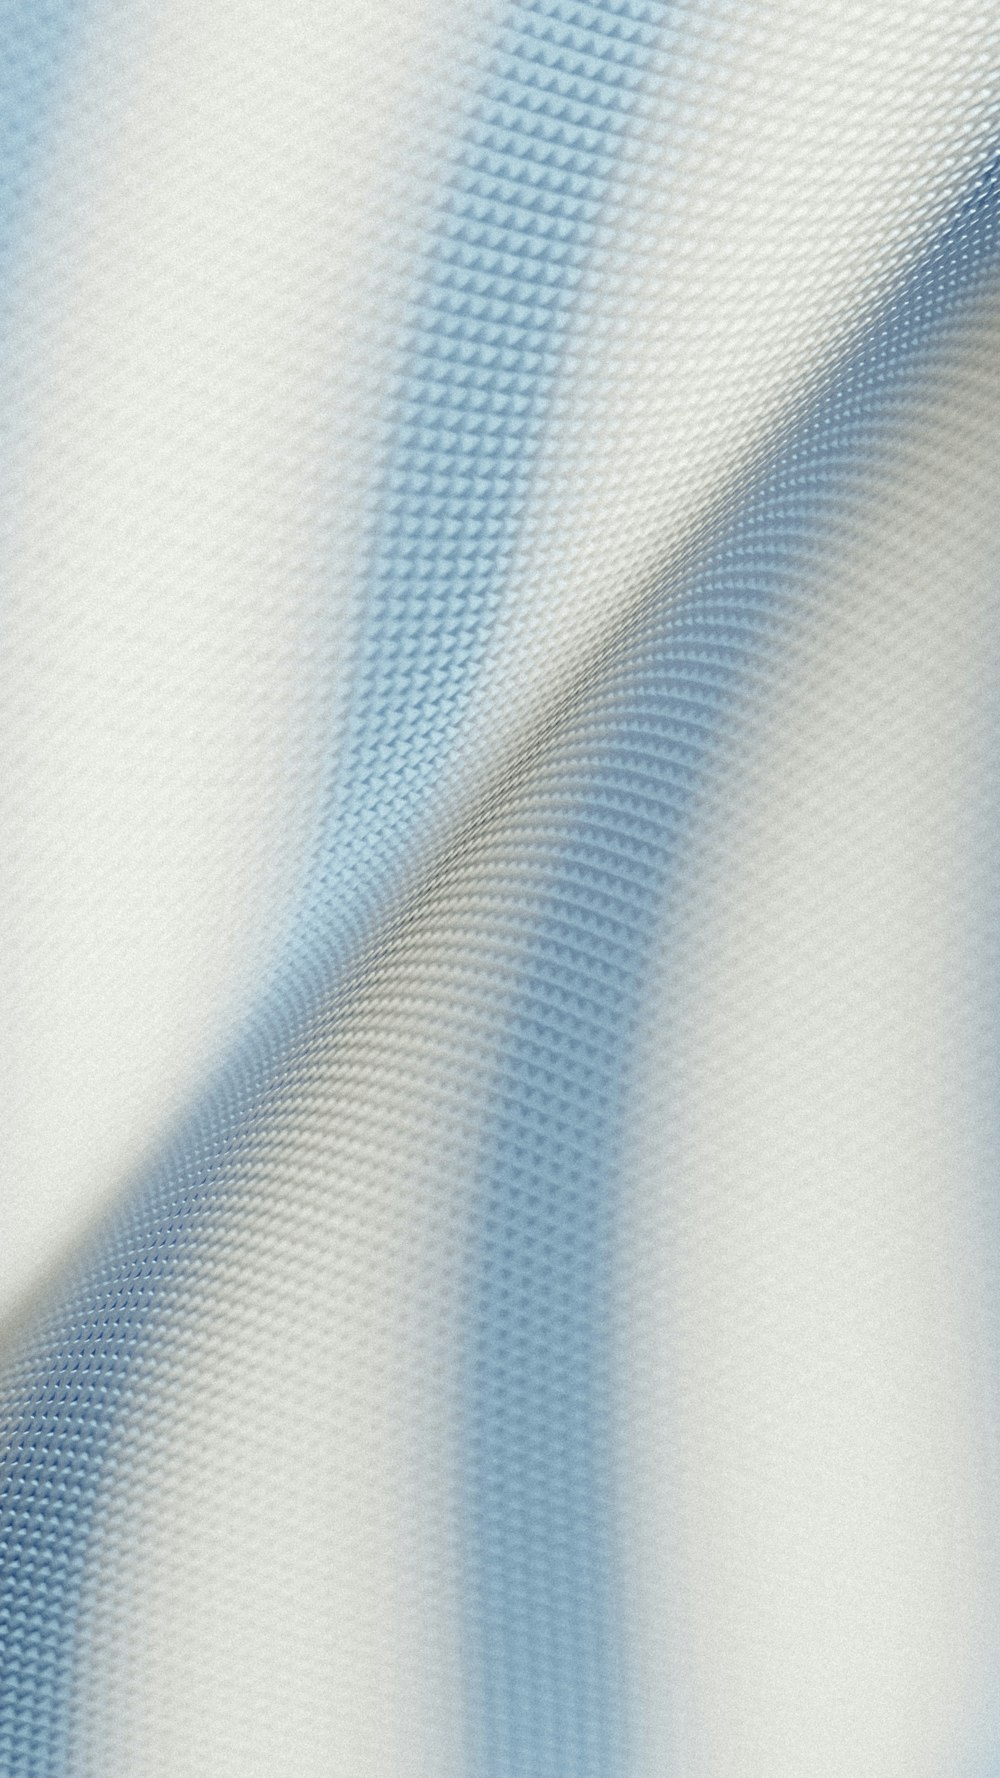 Un primer plano de una tela a rayas azules y blancas